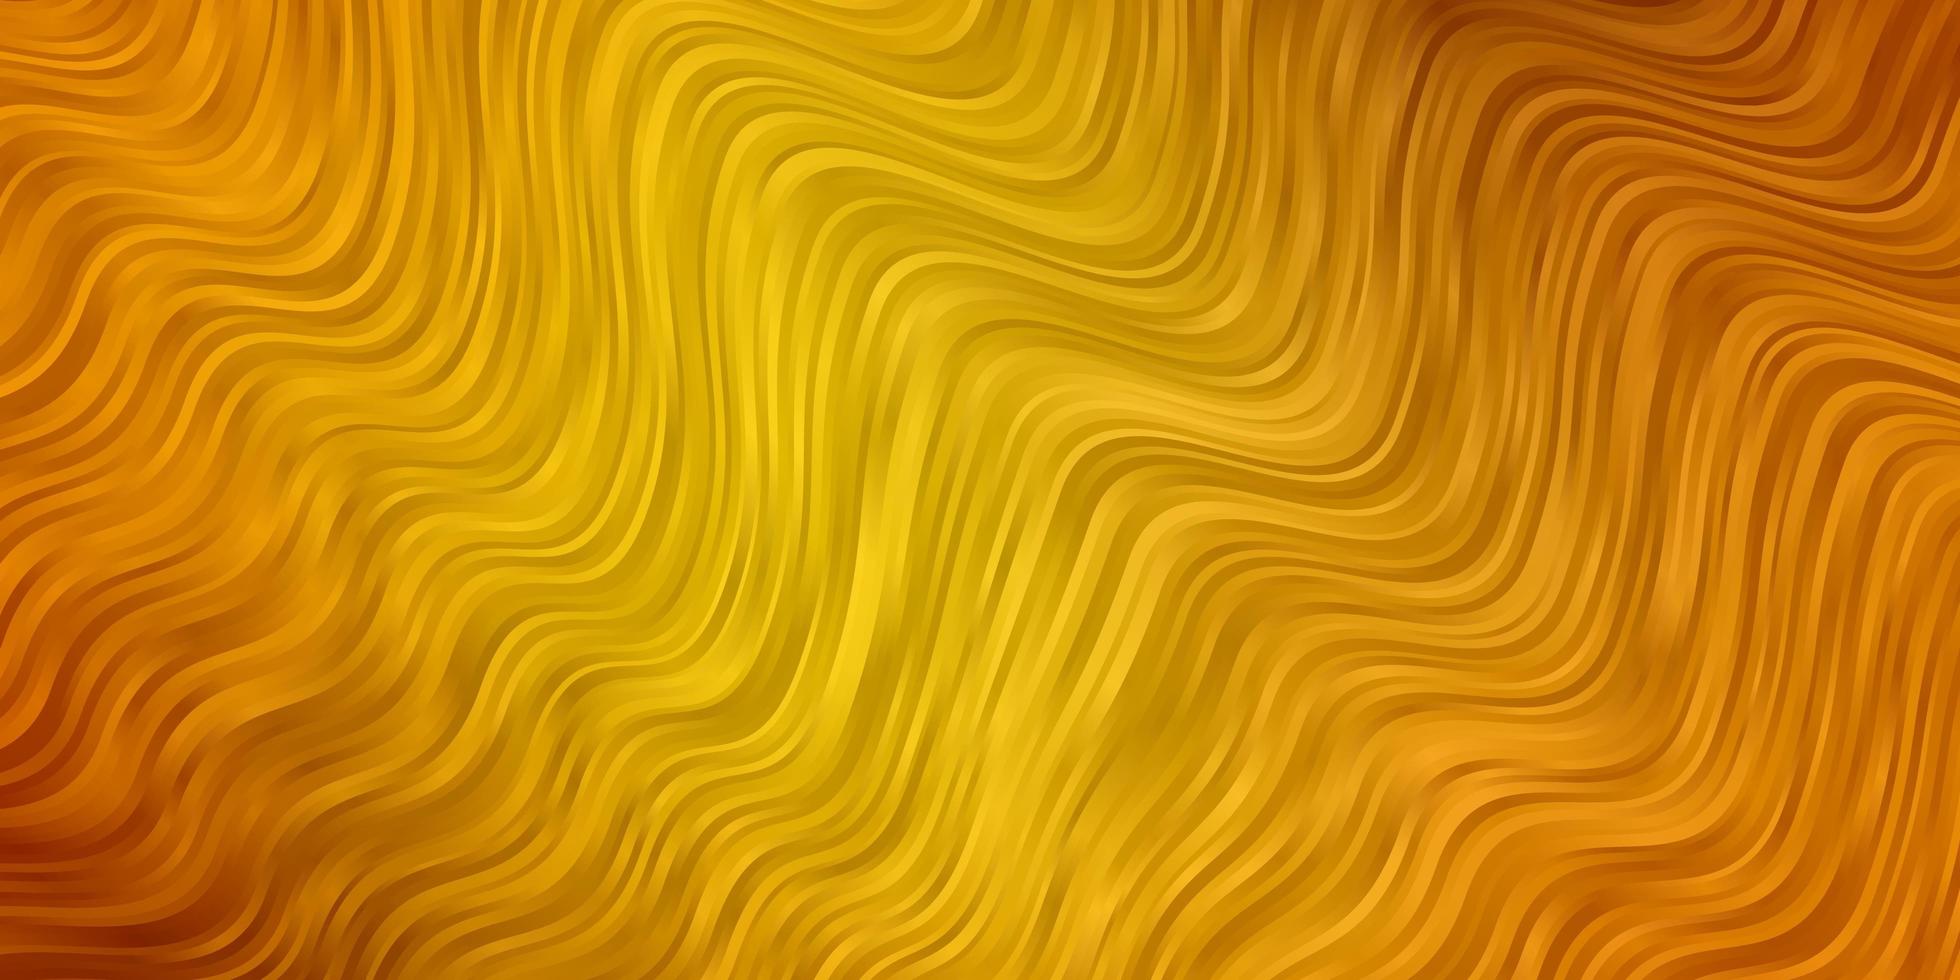 patrón de vector verde claro, amarillo con curvas.